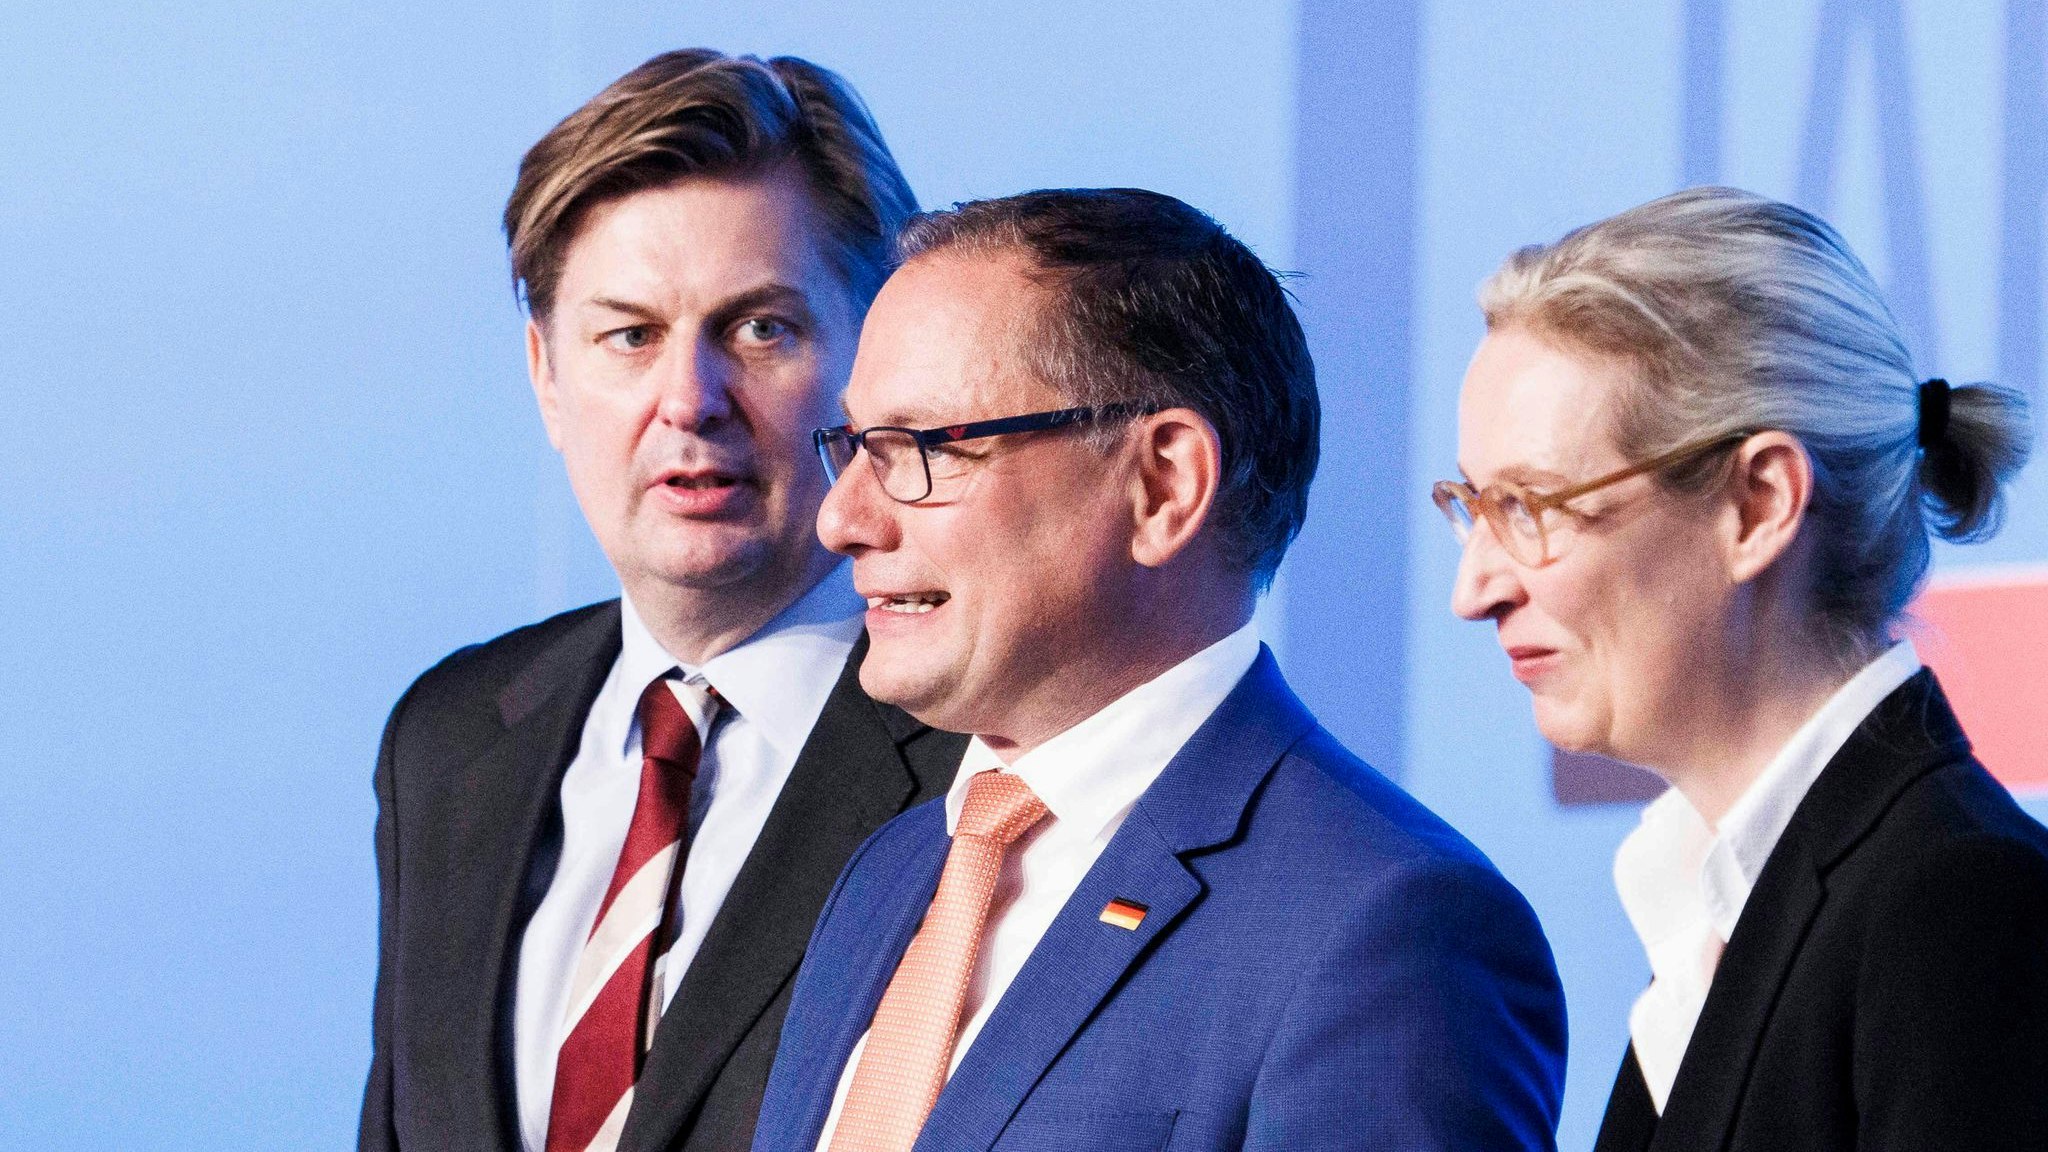 Der Europawahl-Spitzenkandidat Maximilian Krah (l.) auf der Bühne mit den AfD-Bundesvorsitzenden Tino Chrupalla und Alice Weidel. Foto: dpa/Koall